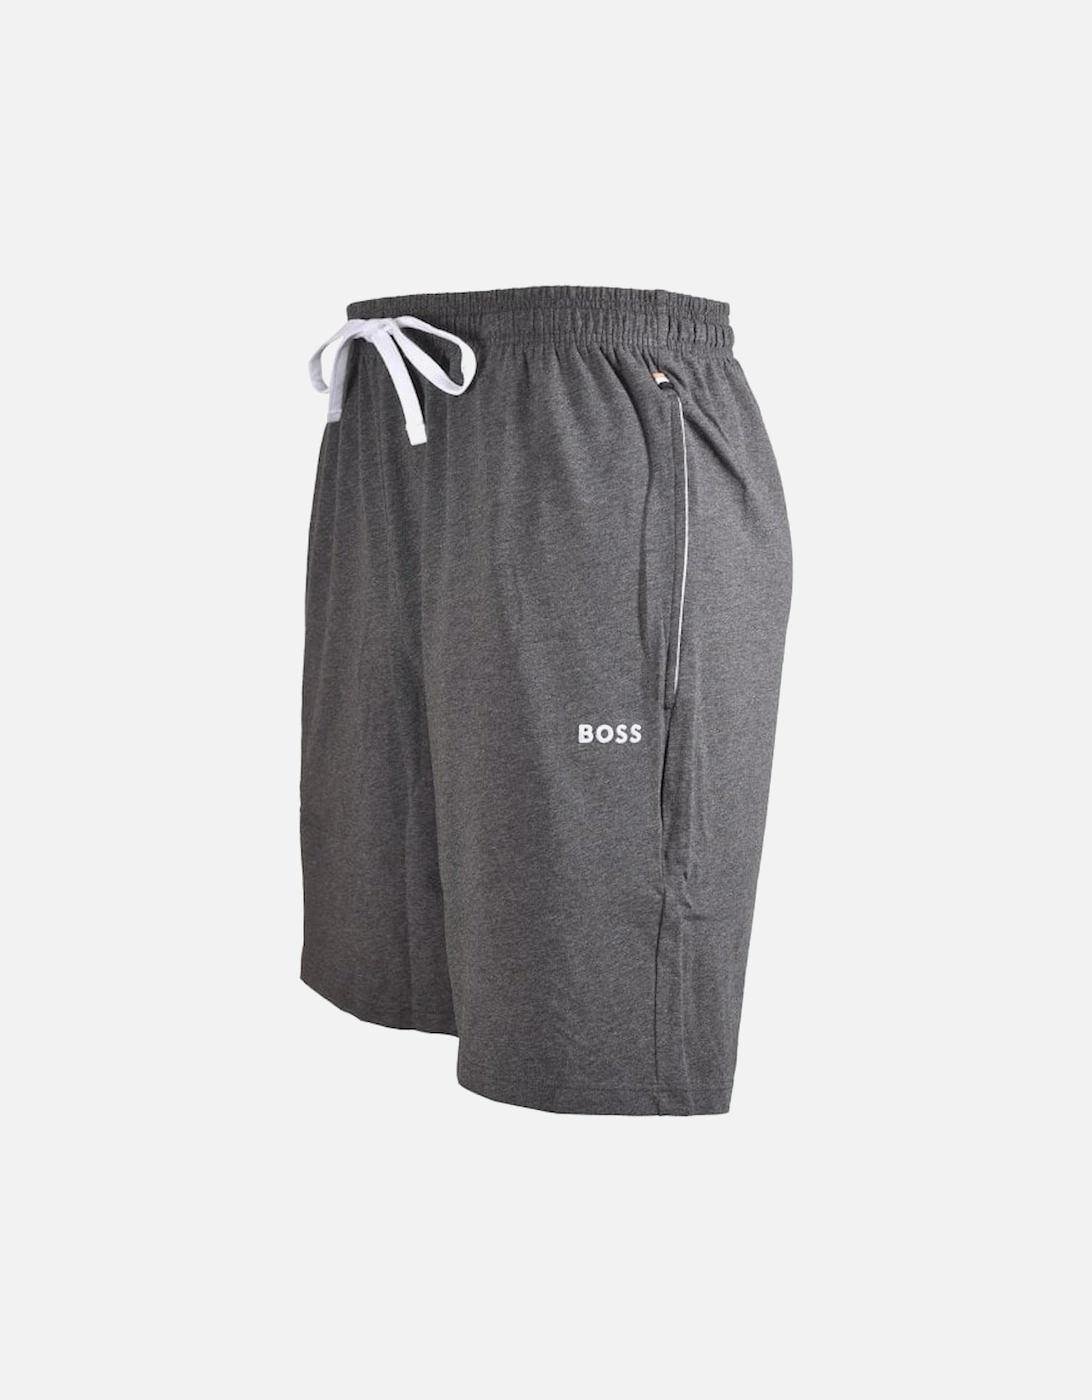 Mix & Match Loungewear Jogging Shorts, Charcoal/white